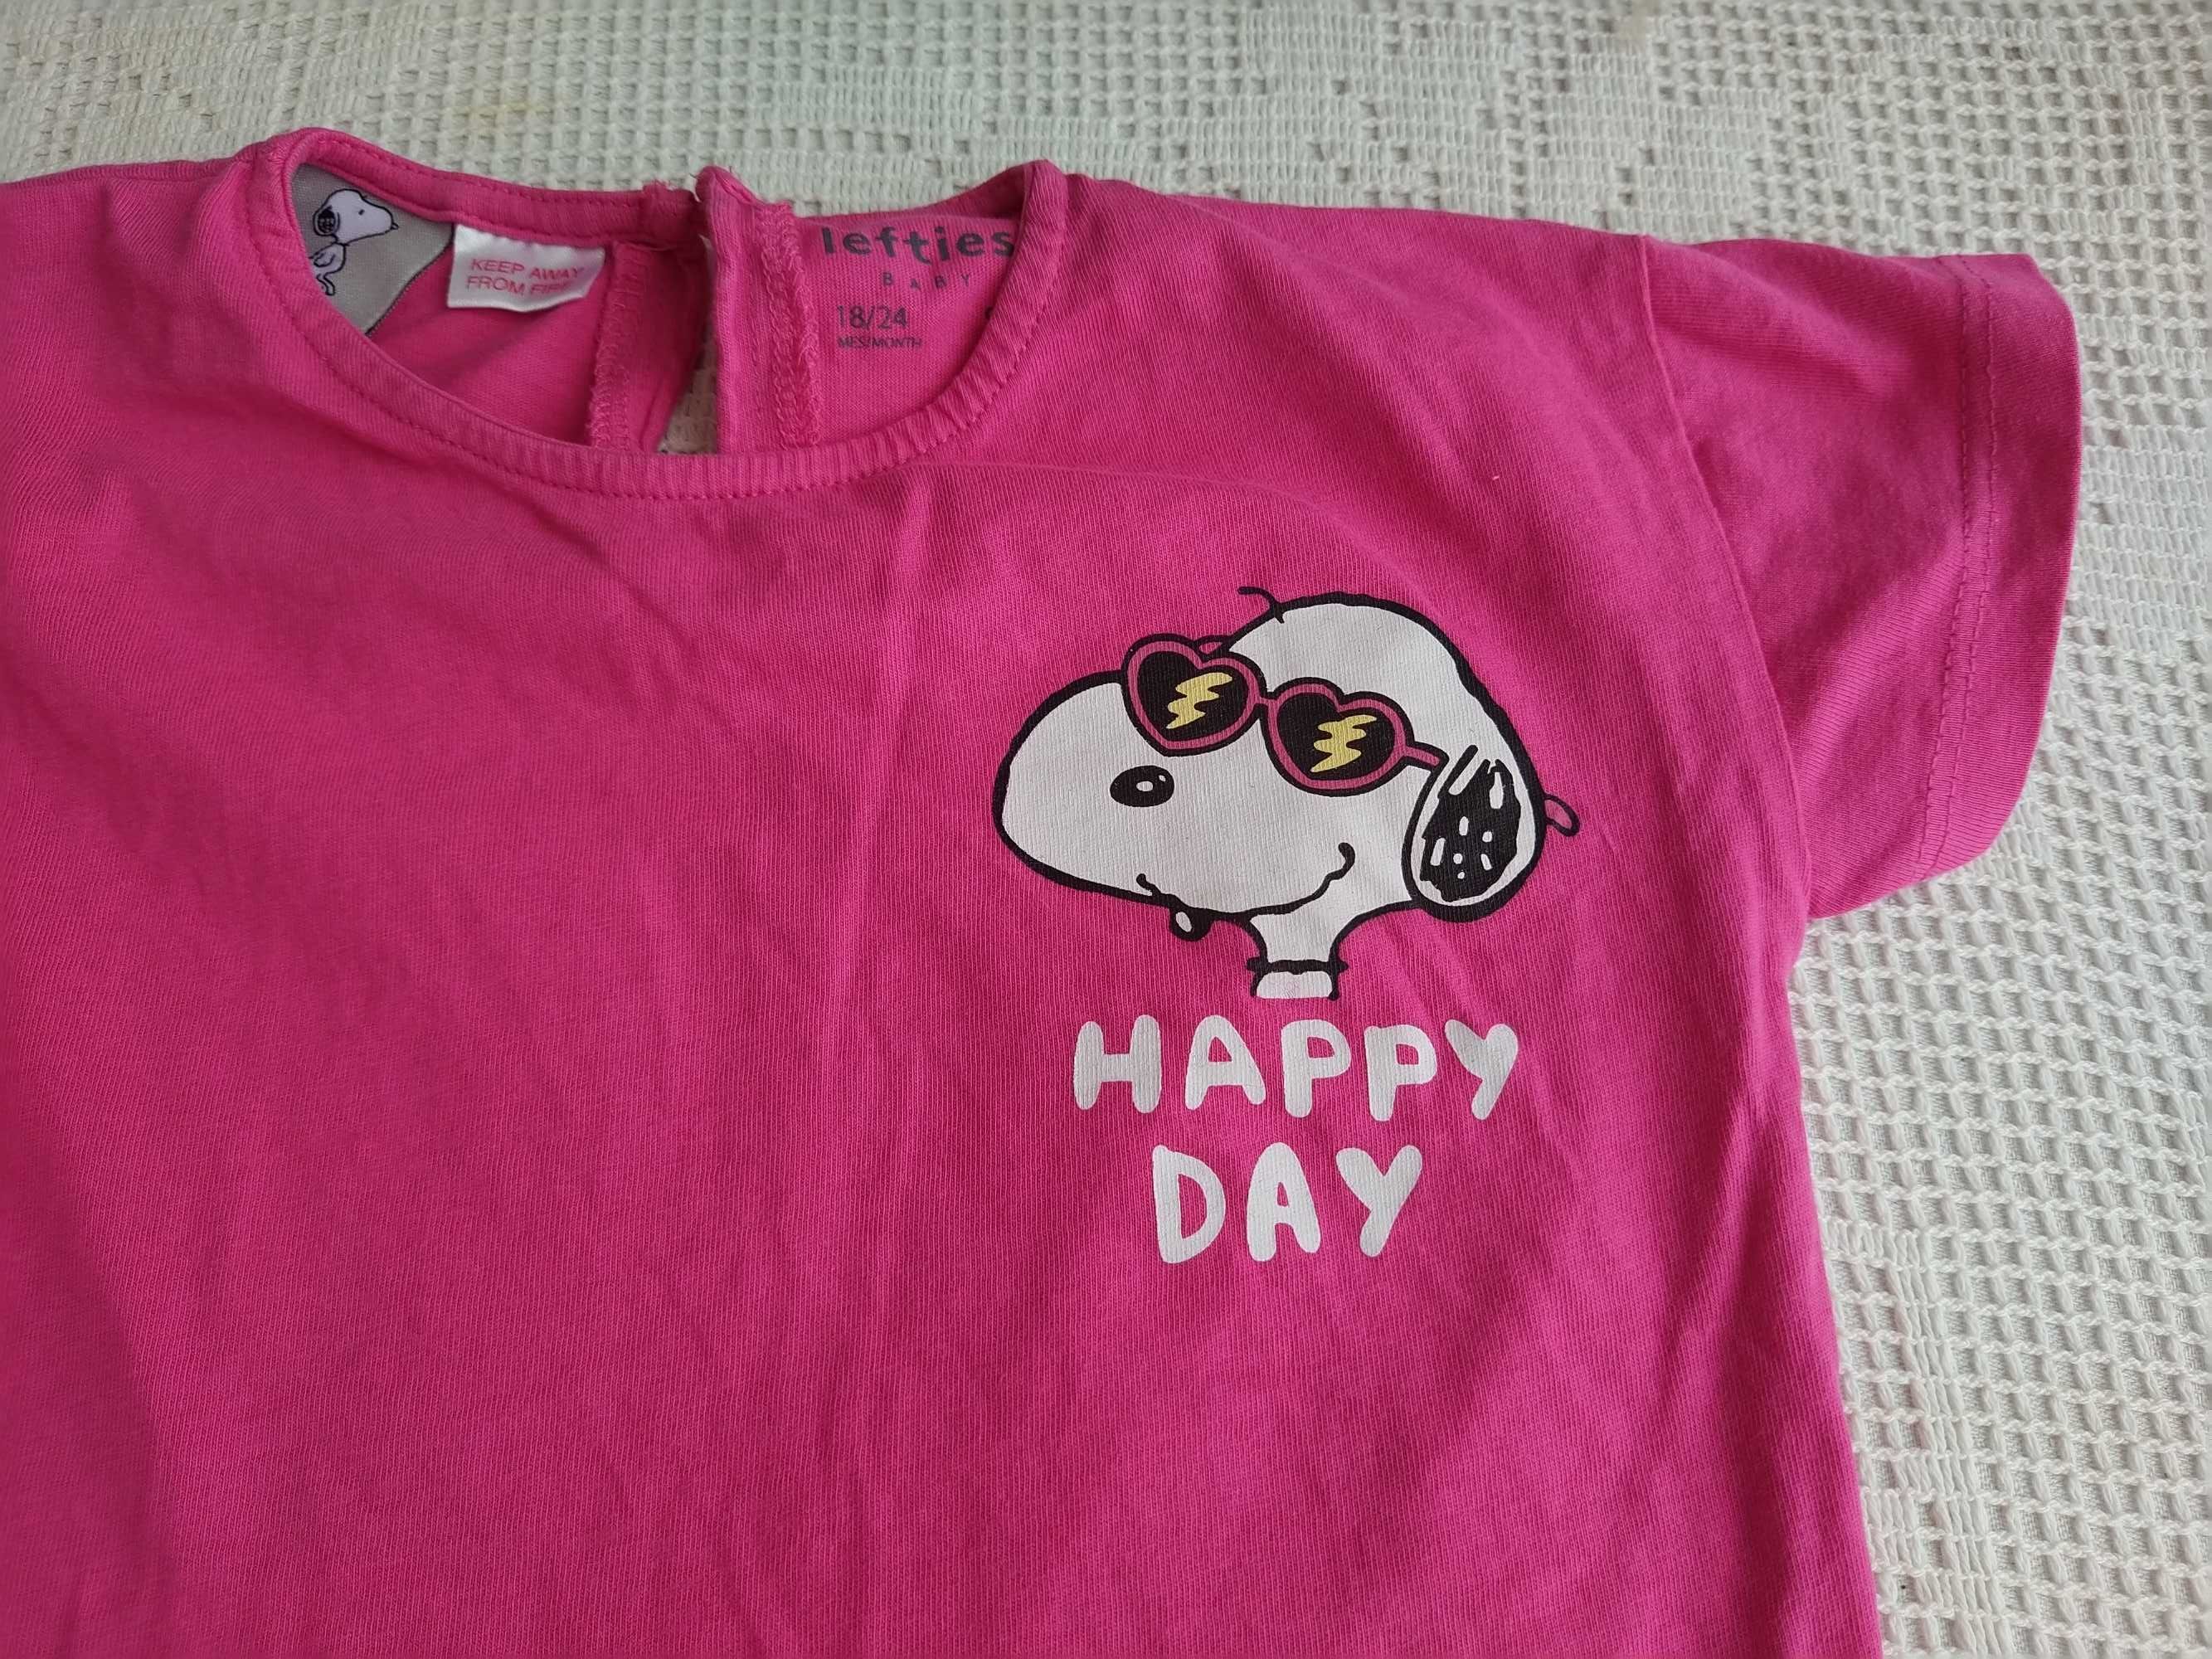 Blusa cor de rosa do Snoopy - Lefties - Tamanho 18 - 24 meses - 92 cm